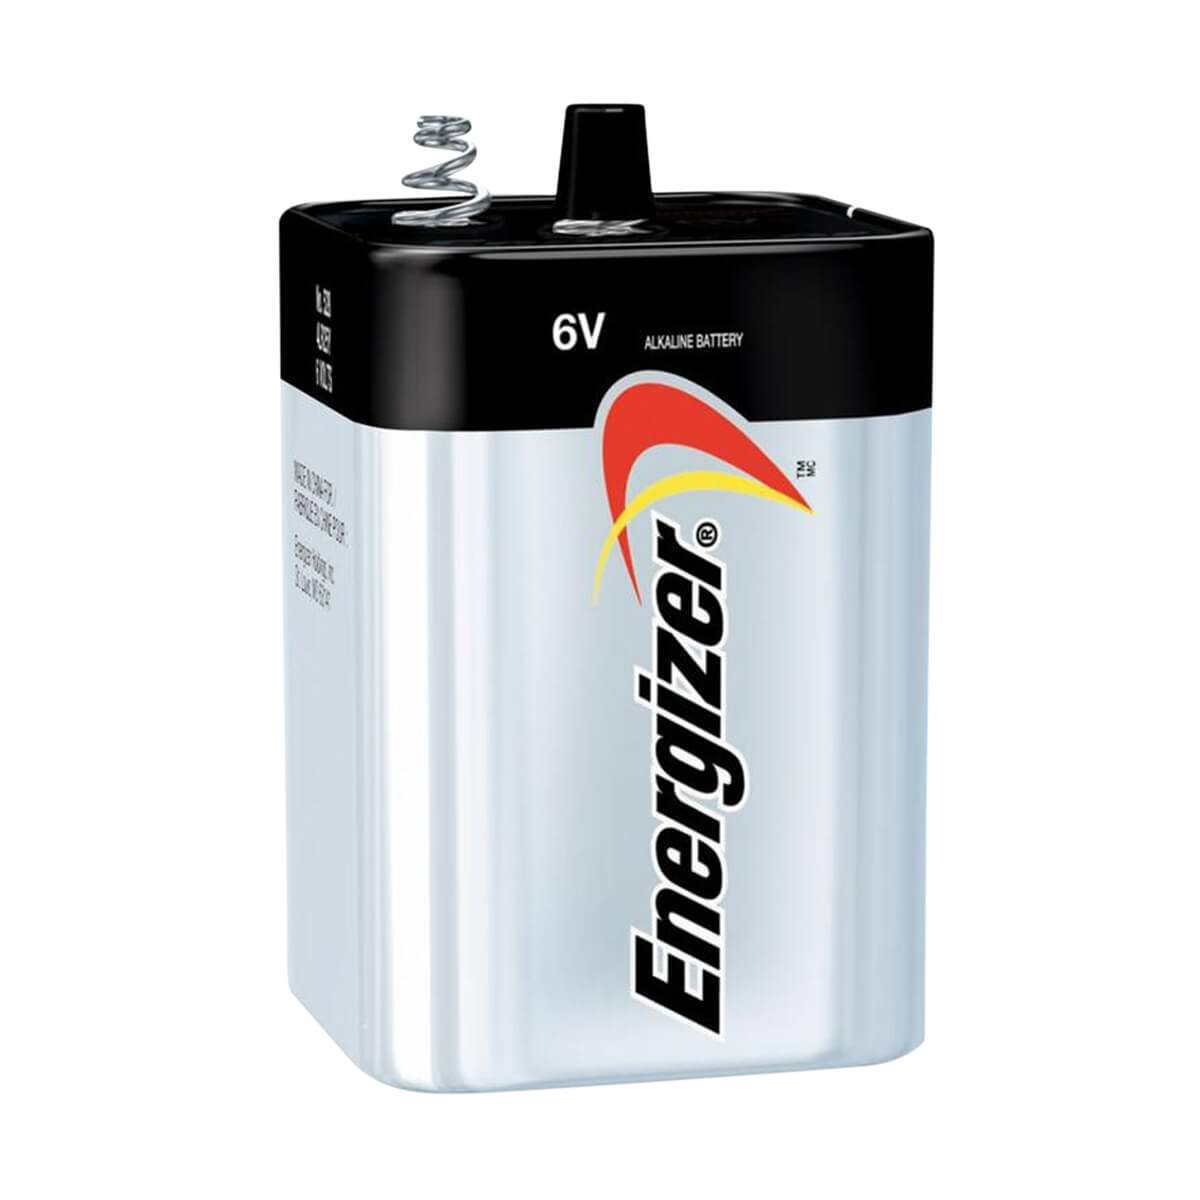 Energizer® 6V Alkaline Battery